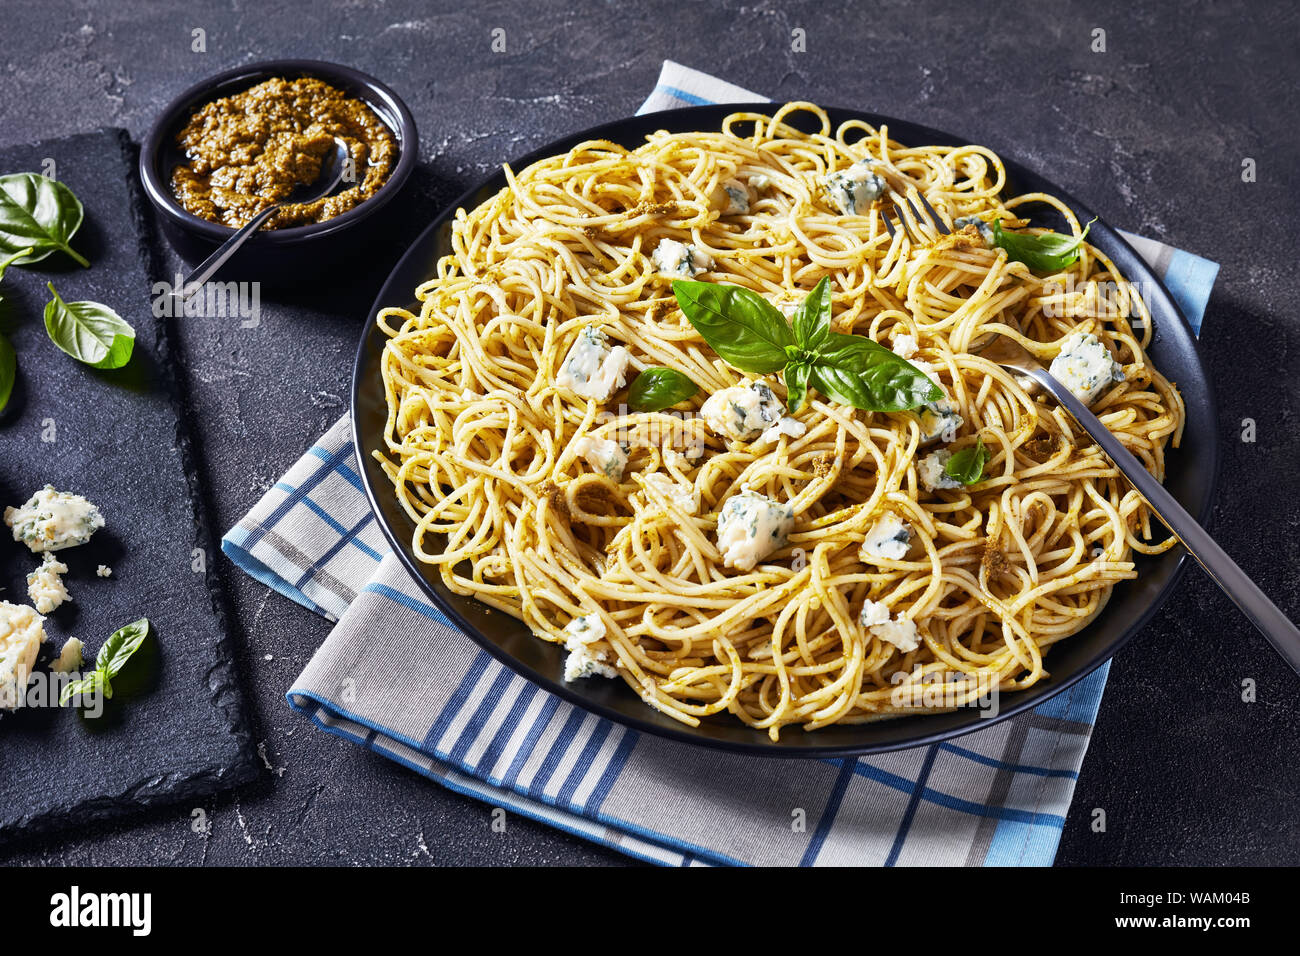 Délicieux spaghetti au pesto de basilic et de fromage bleu sur une plaque noire sur une table en béton, la cuisine italienne, vue horizontale d'en haut Banque D'Images